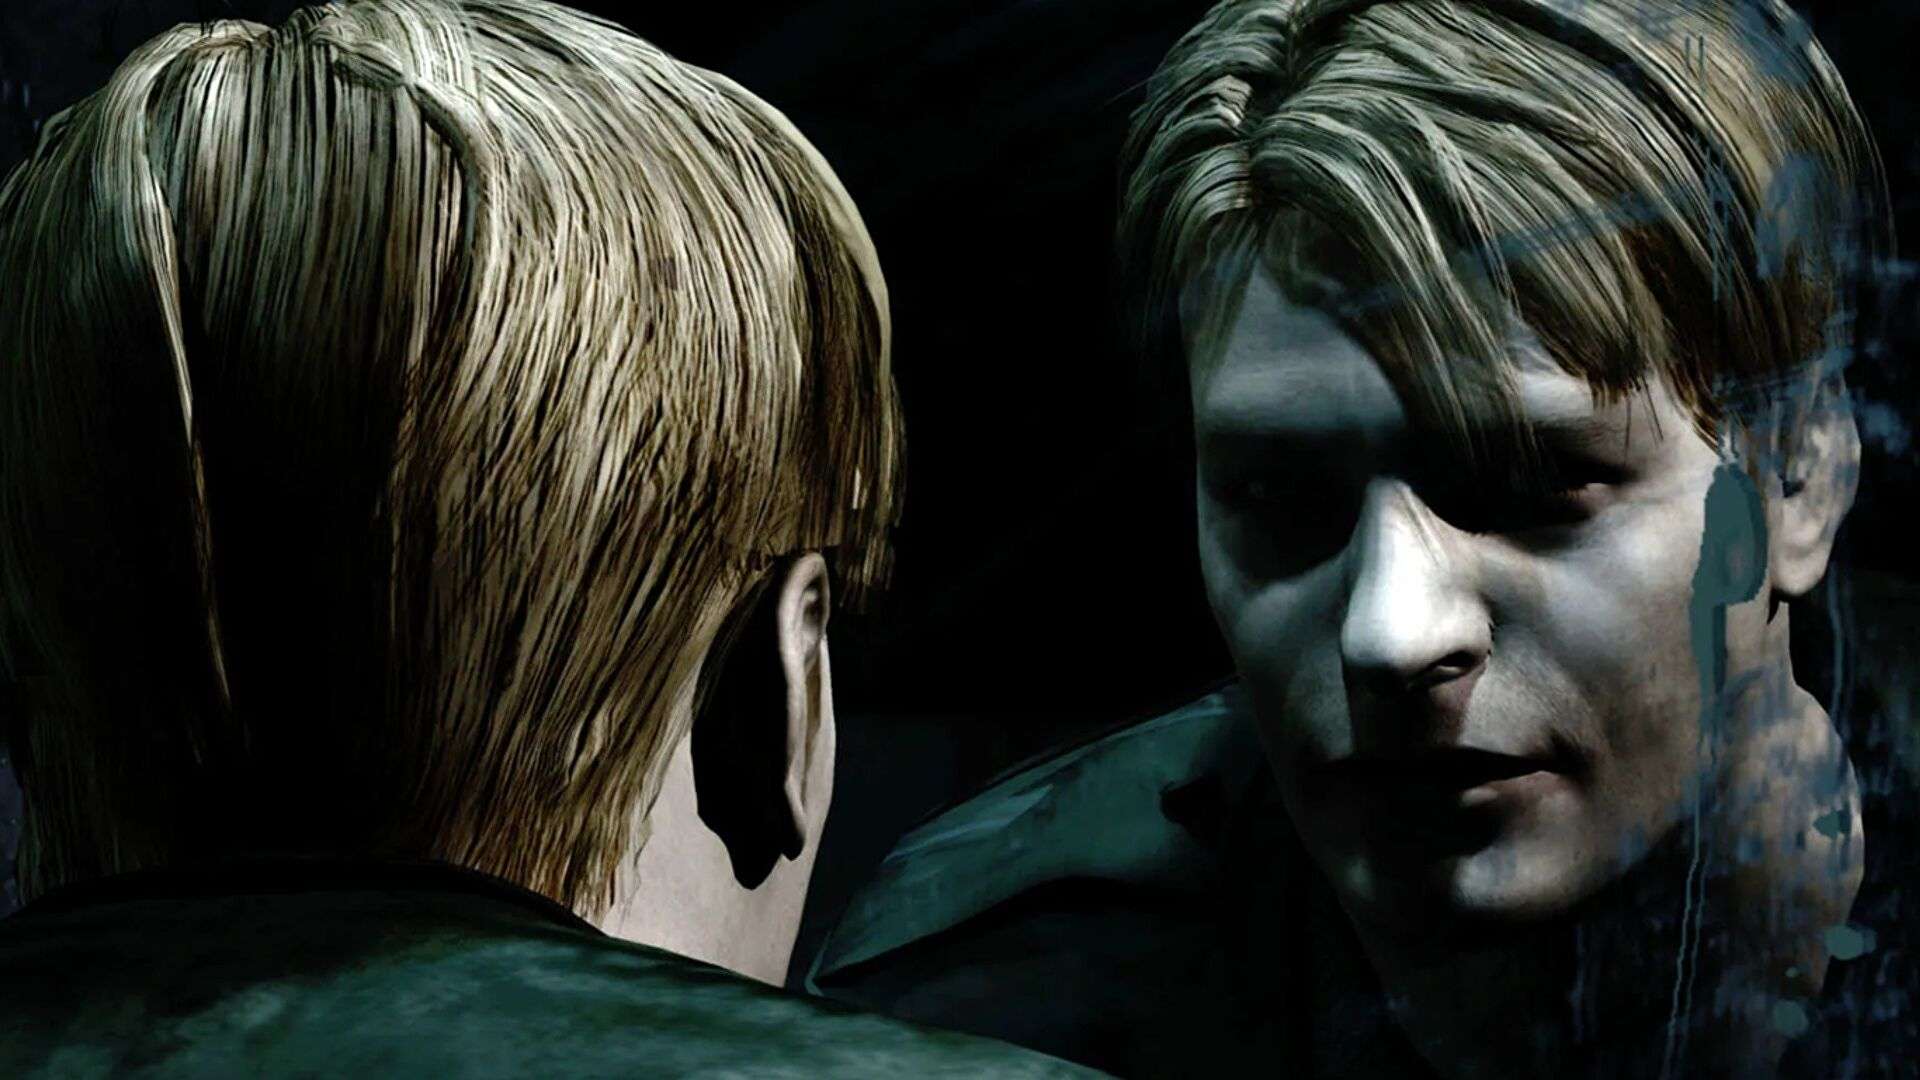 Silent Hill trở lại hứa hẹn những gì thú vị nhất trong sản phẩm mới